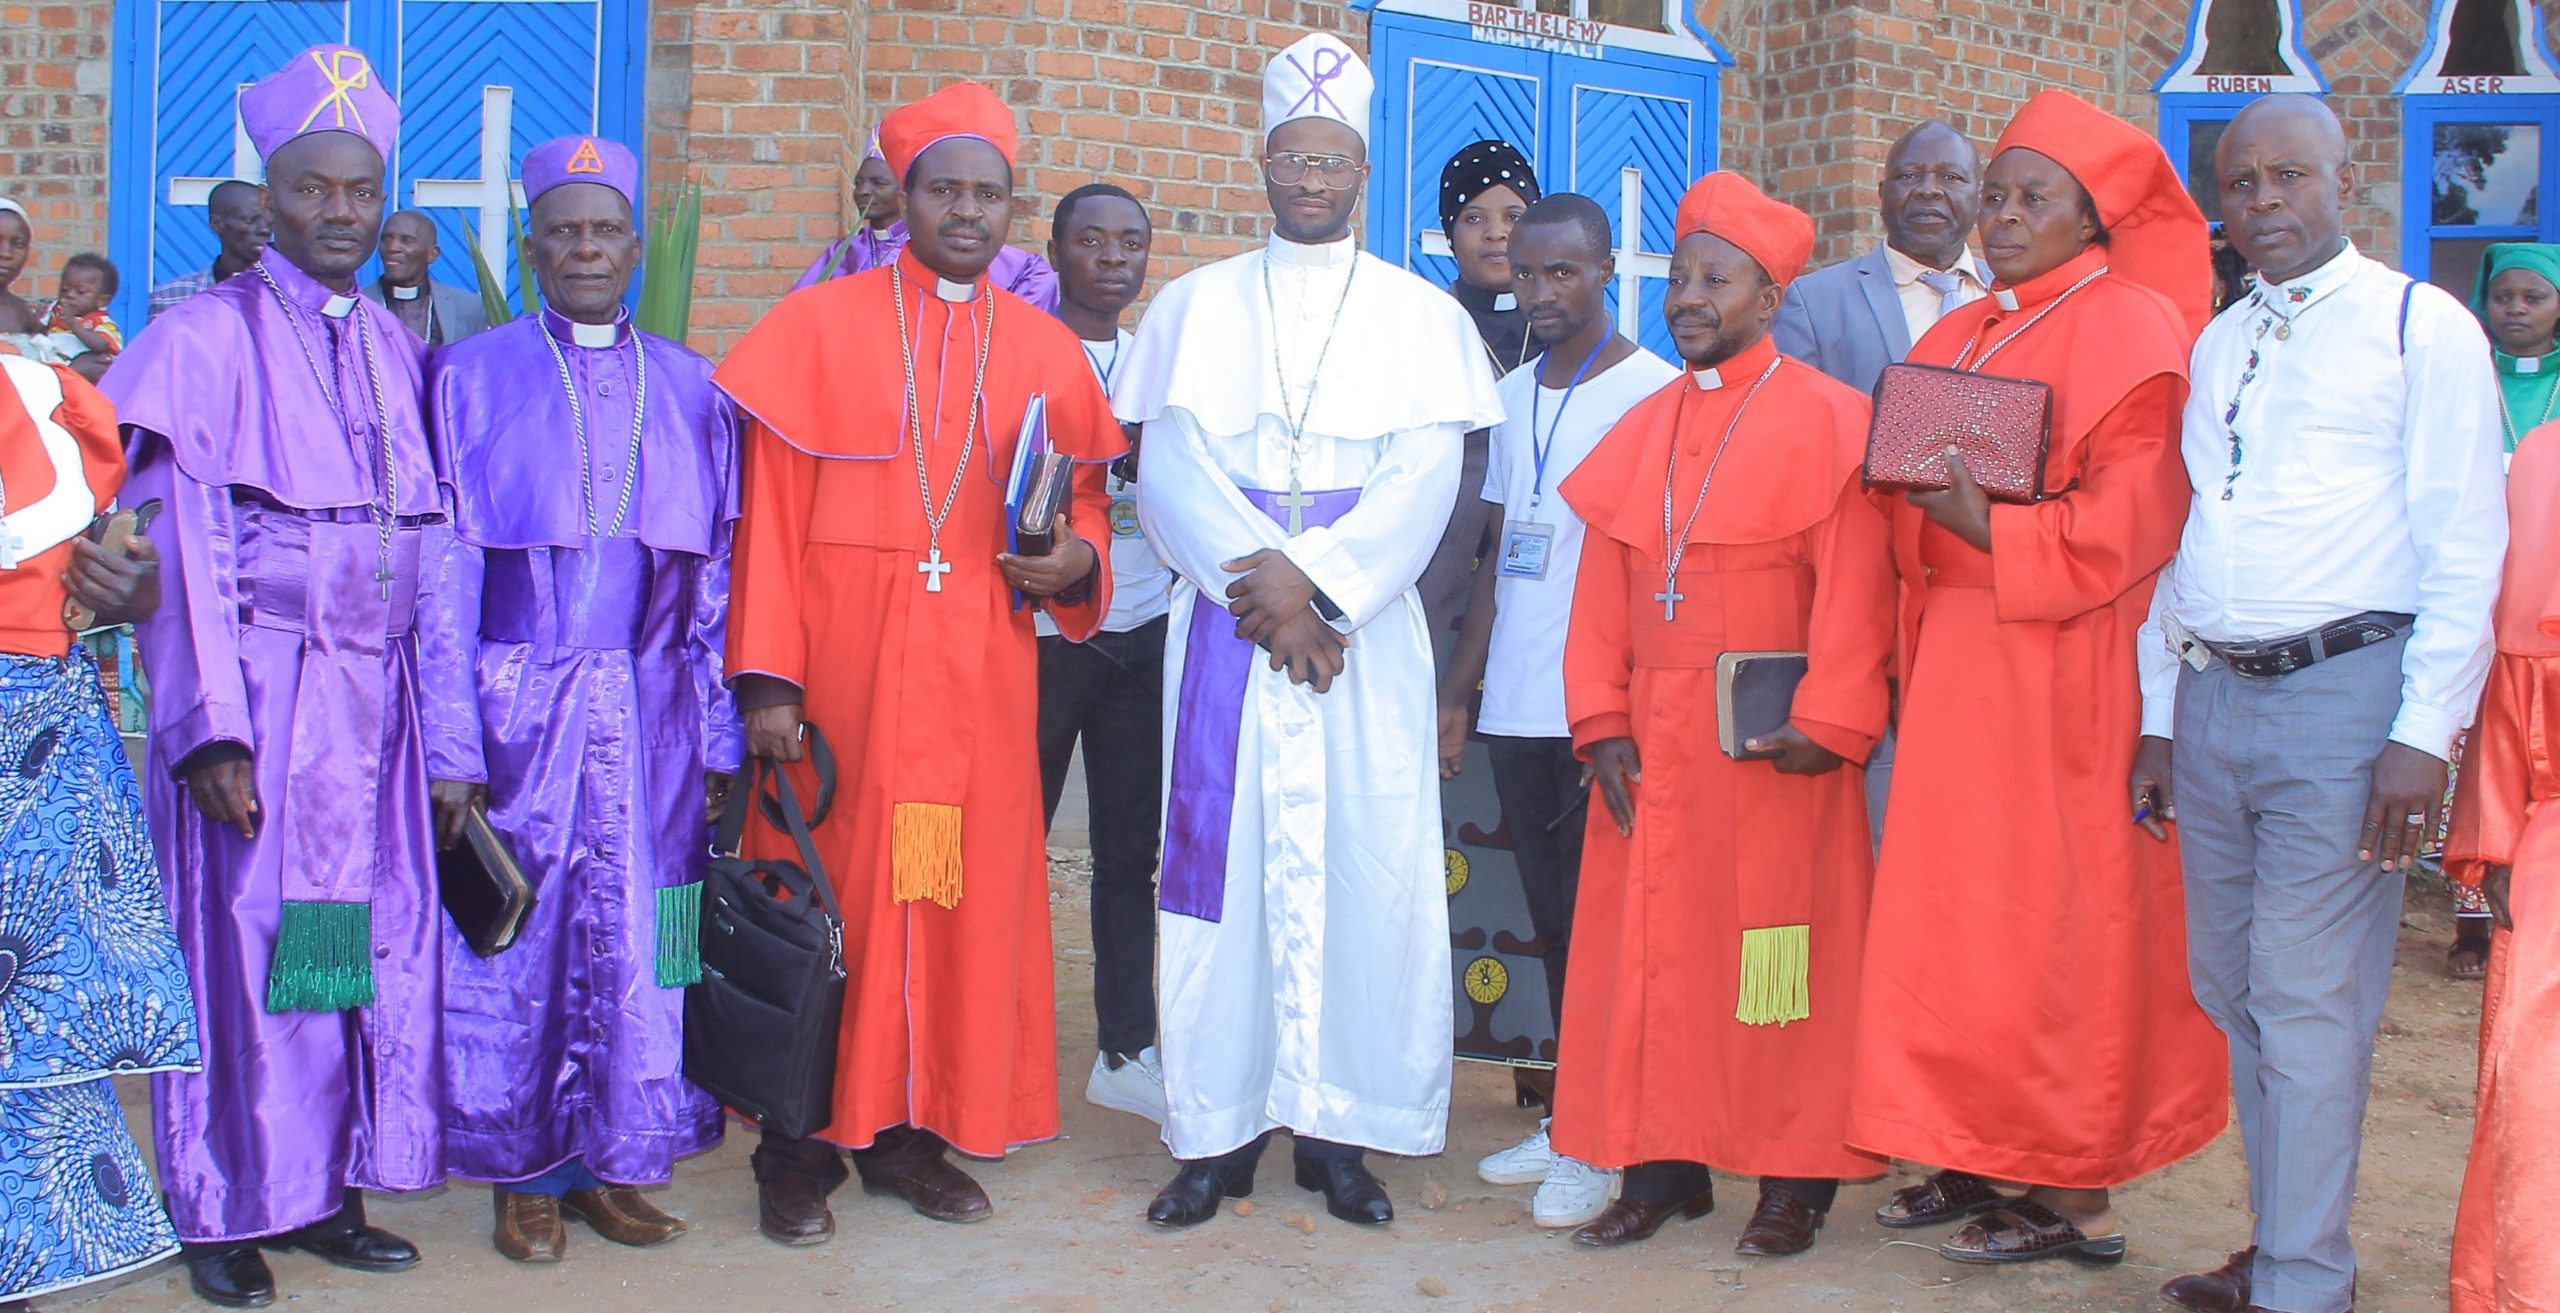 Les évêques de l’EERA ont peint un tableau sombre de la situation sécuritaire en RDC